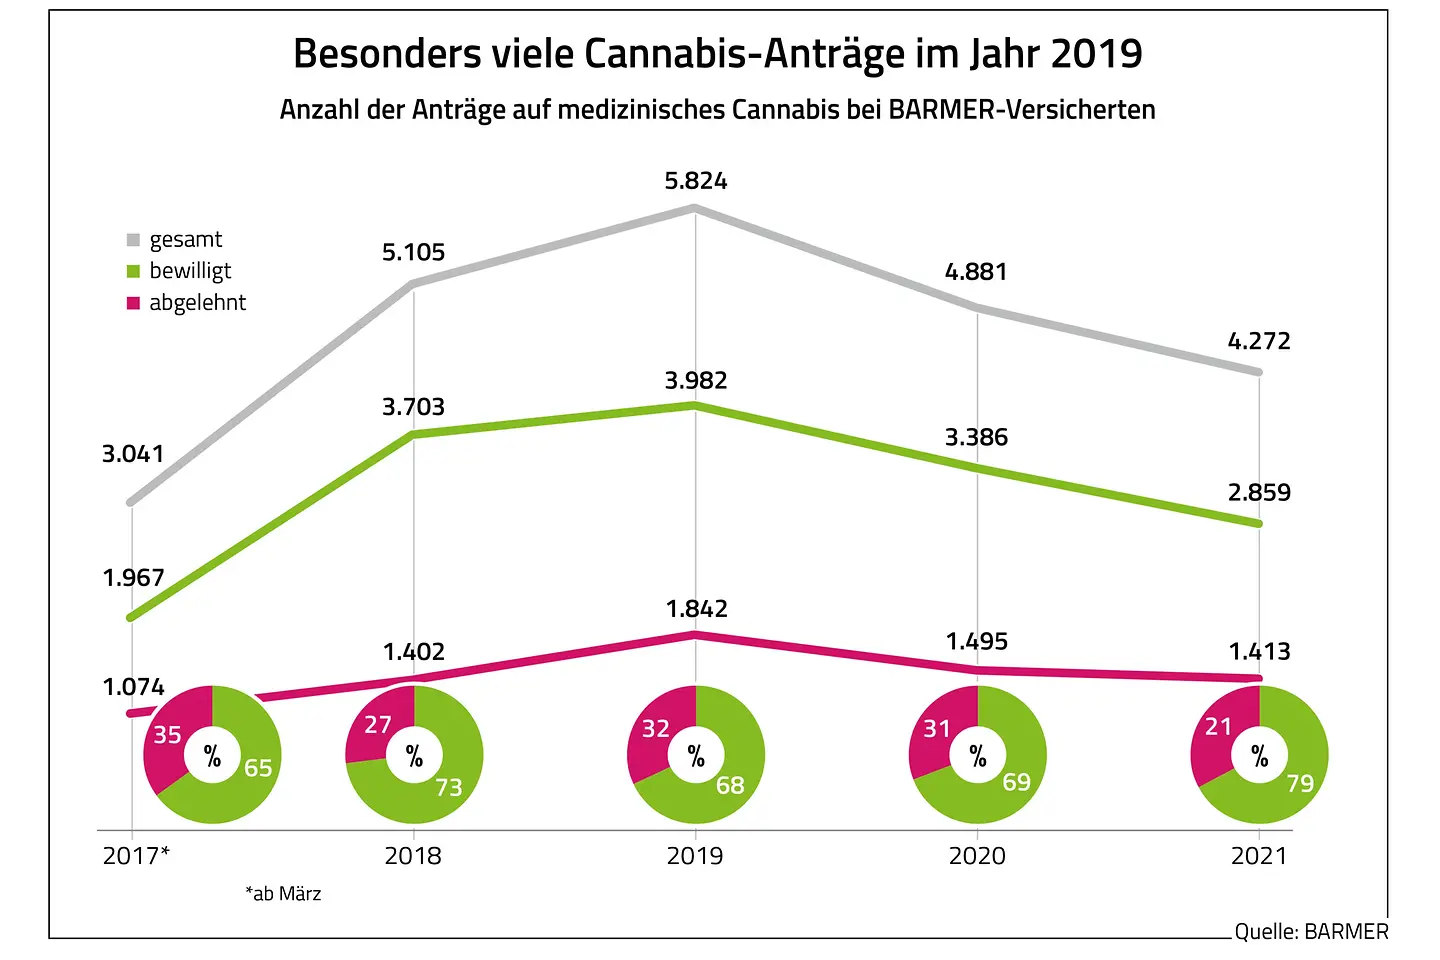 Besonders viele Cannabis-Anträge im Jahr 2019